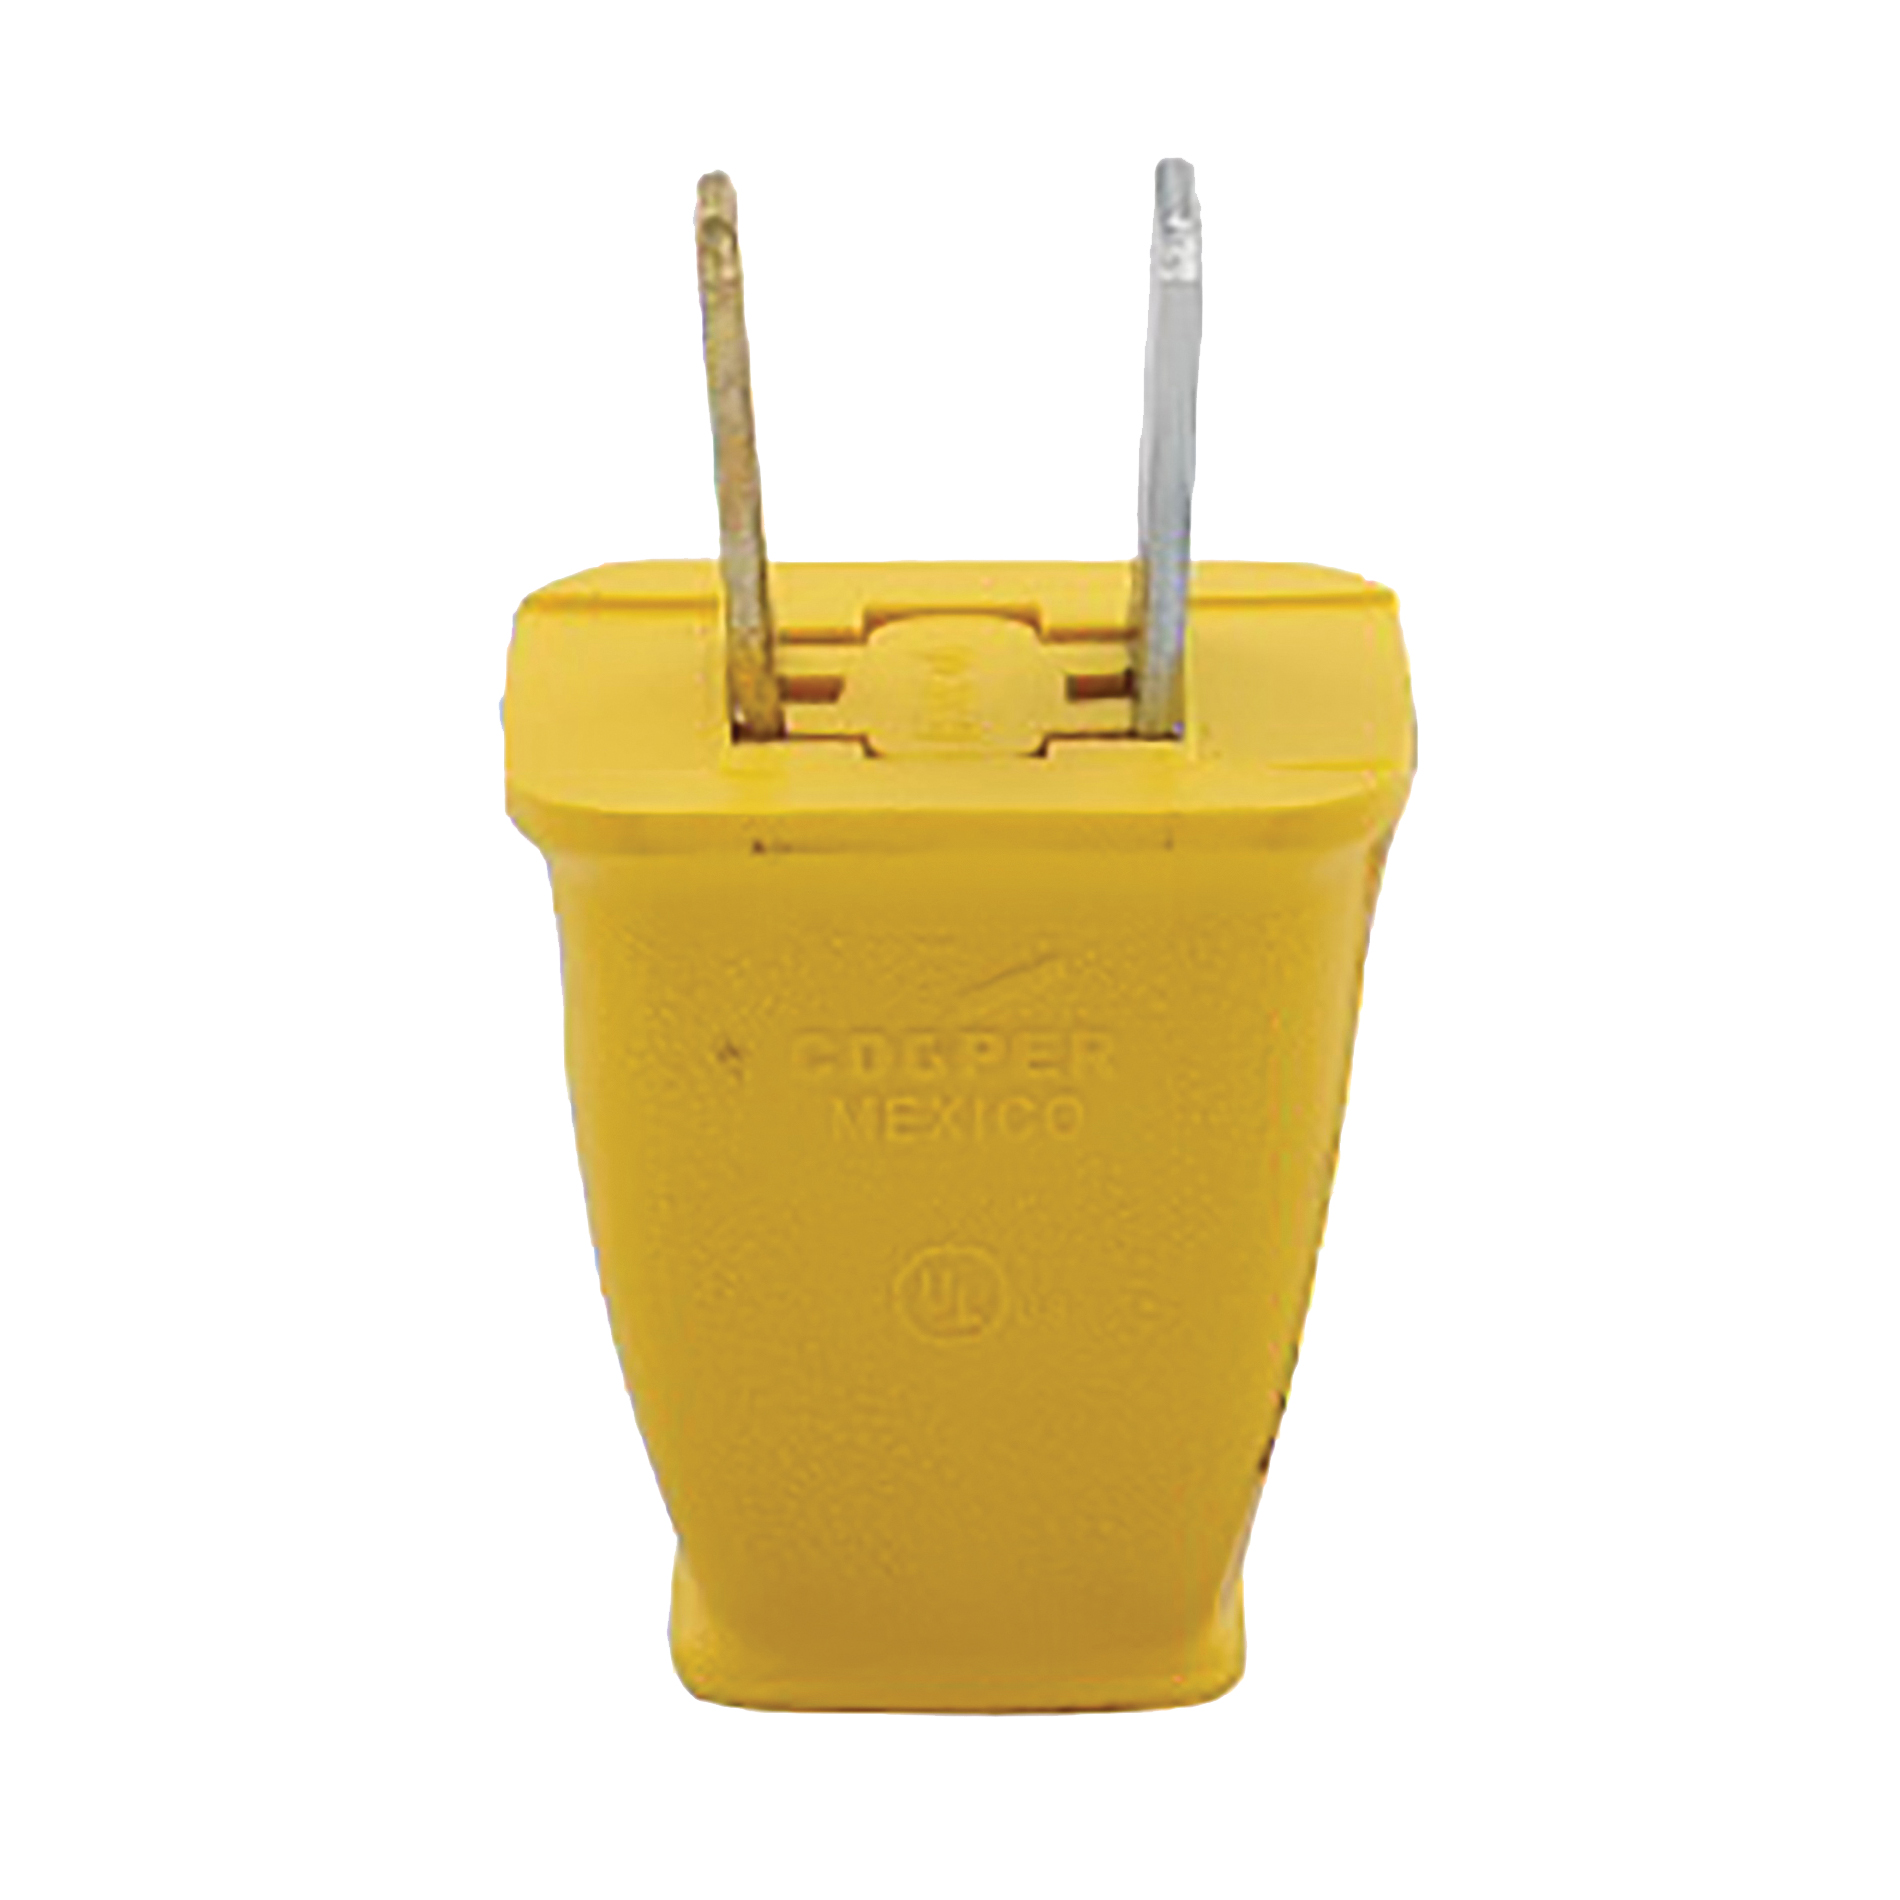 SA540GD Electrical Plug, 2 -Pole, 15 A, 125 V, NEMA: NEMA 1-15, Yellow